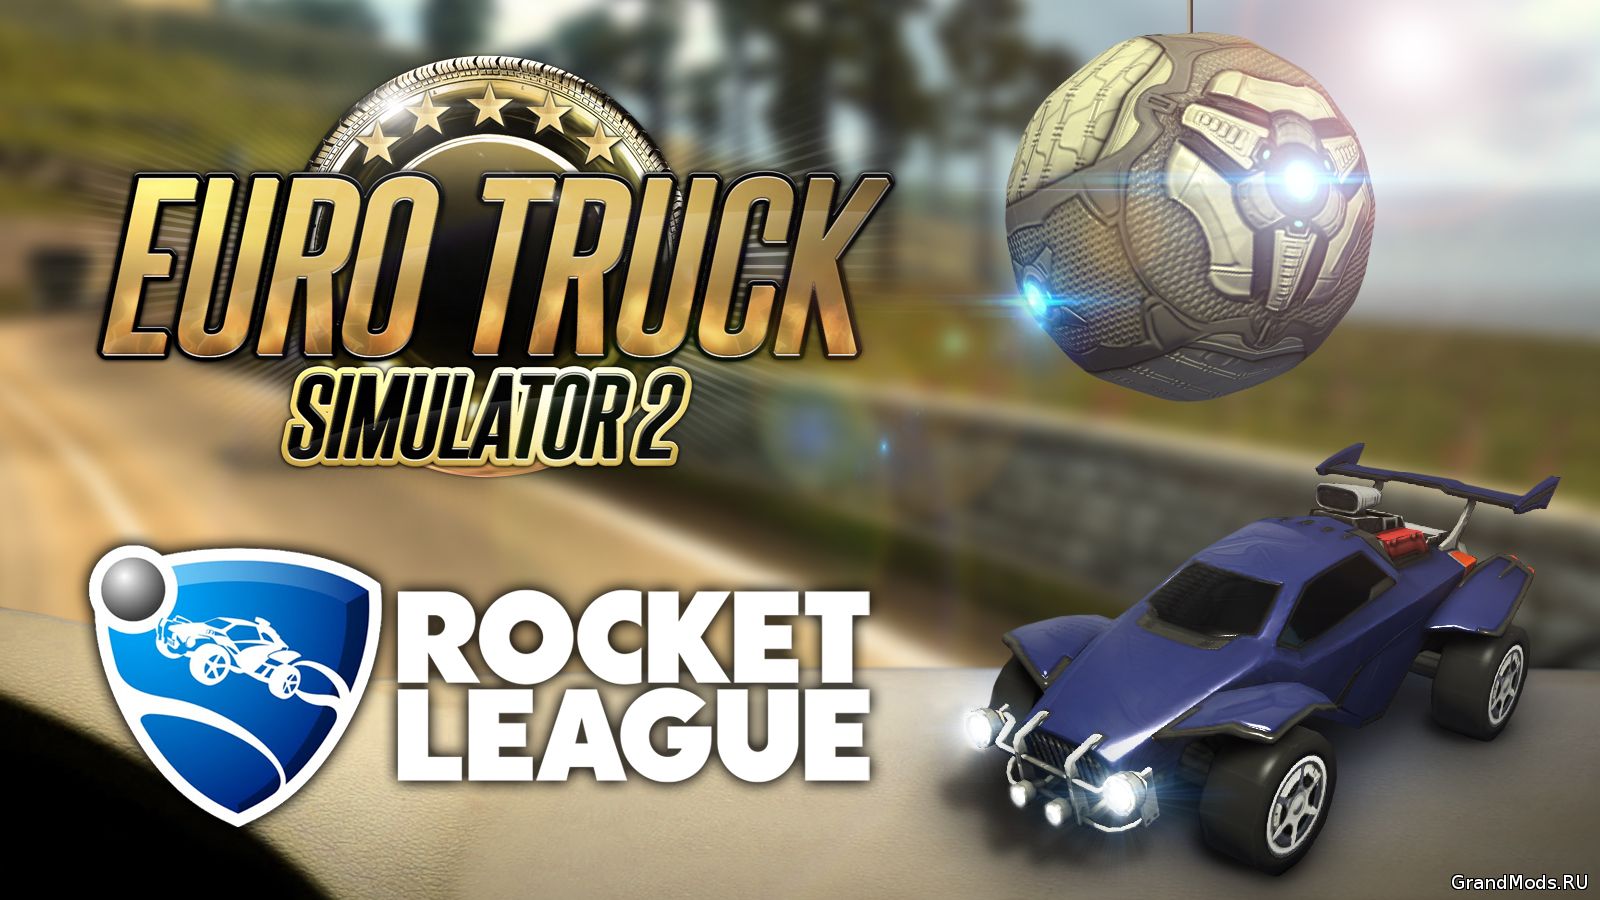 Прикосновение Rocket League  в Euro Truck Simulator 2